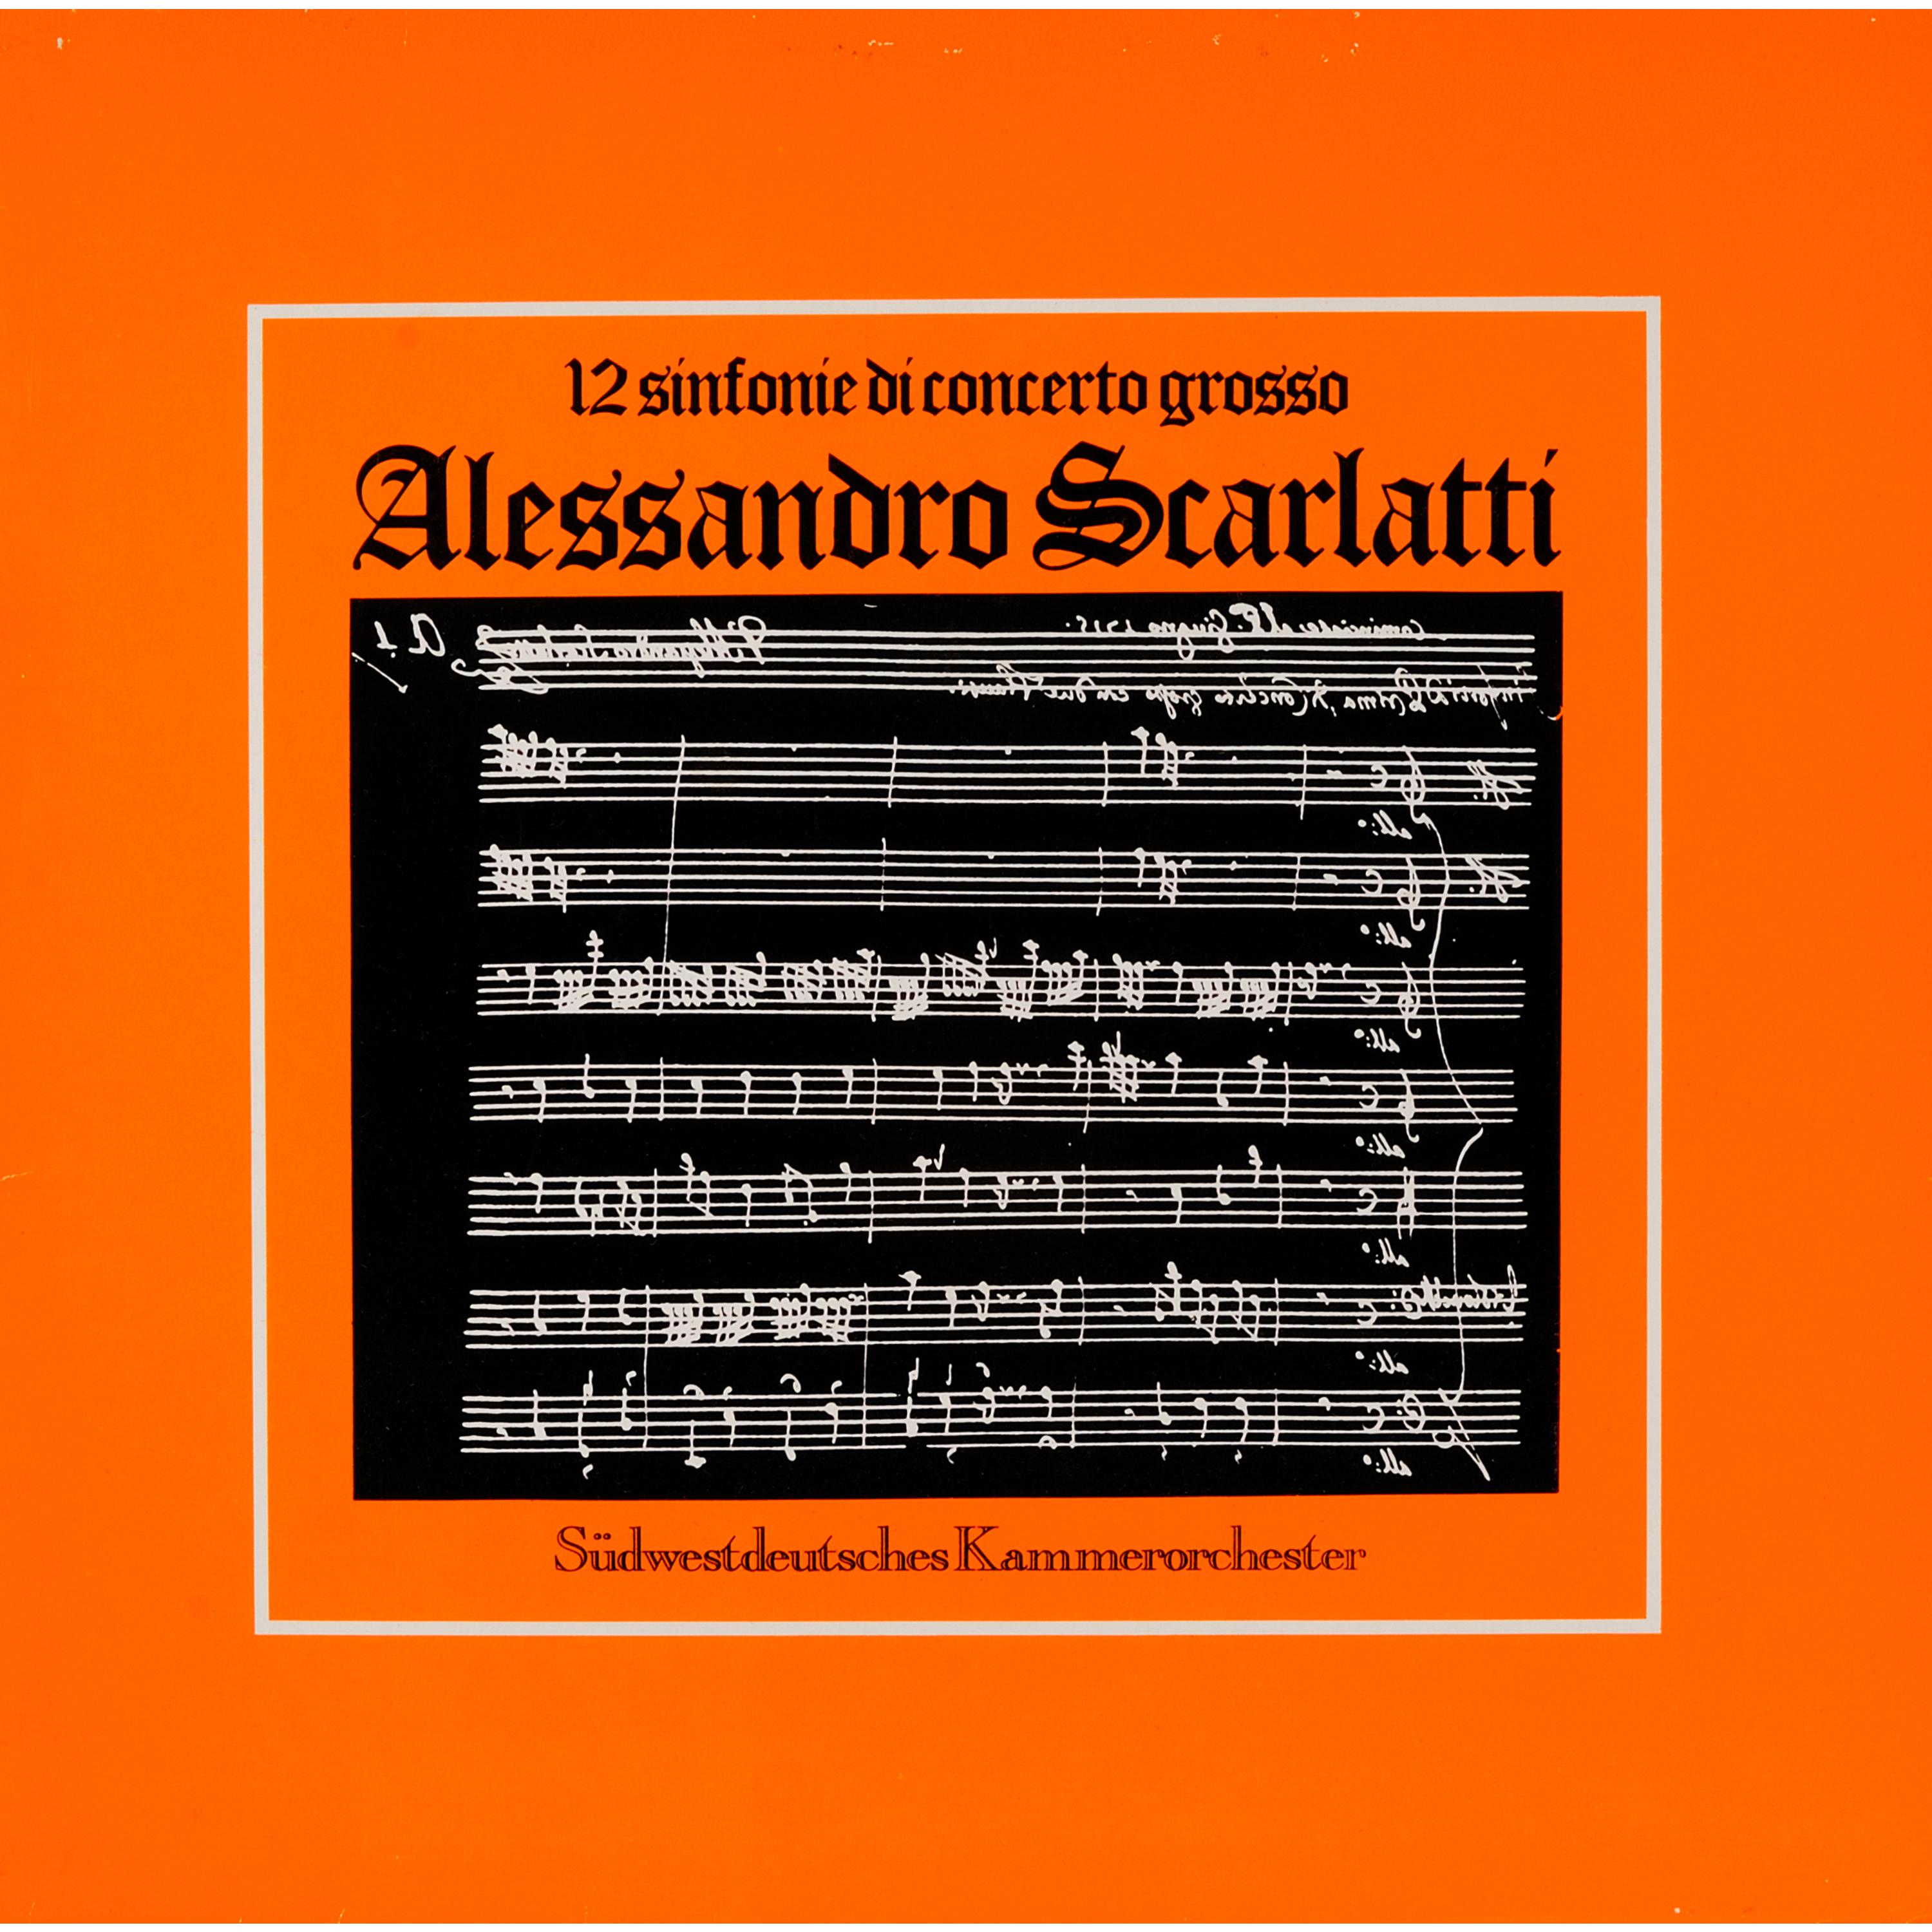 Sinfonia di concerto grosso No. 9 in G Minor: Vivace - Adagio - Allegro moderato - Adagio - Allegro - Menuett